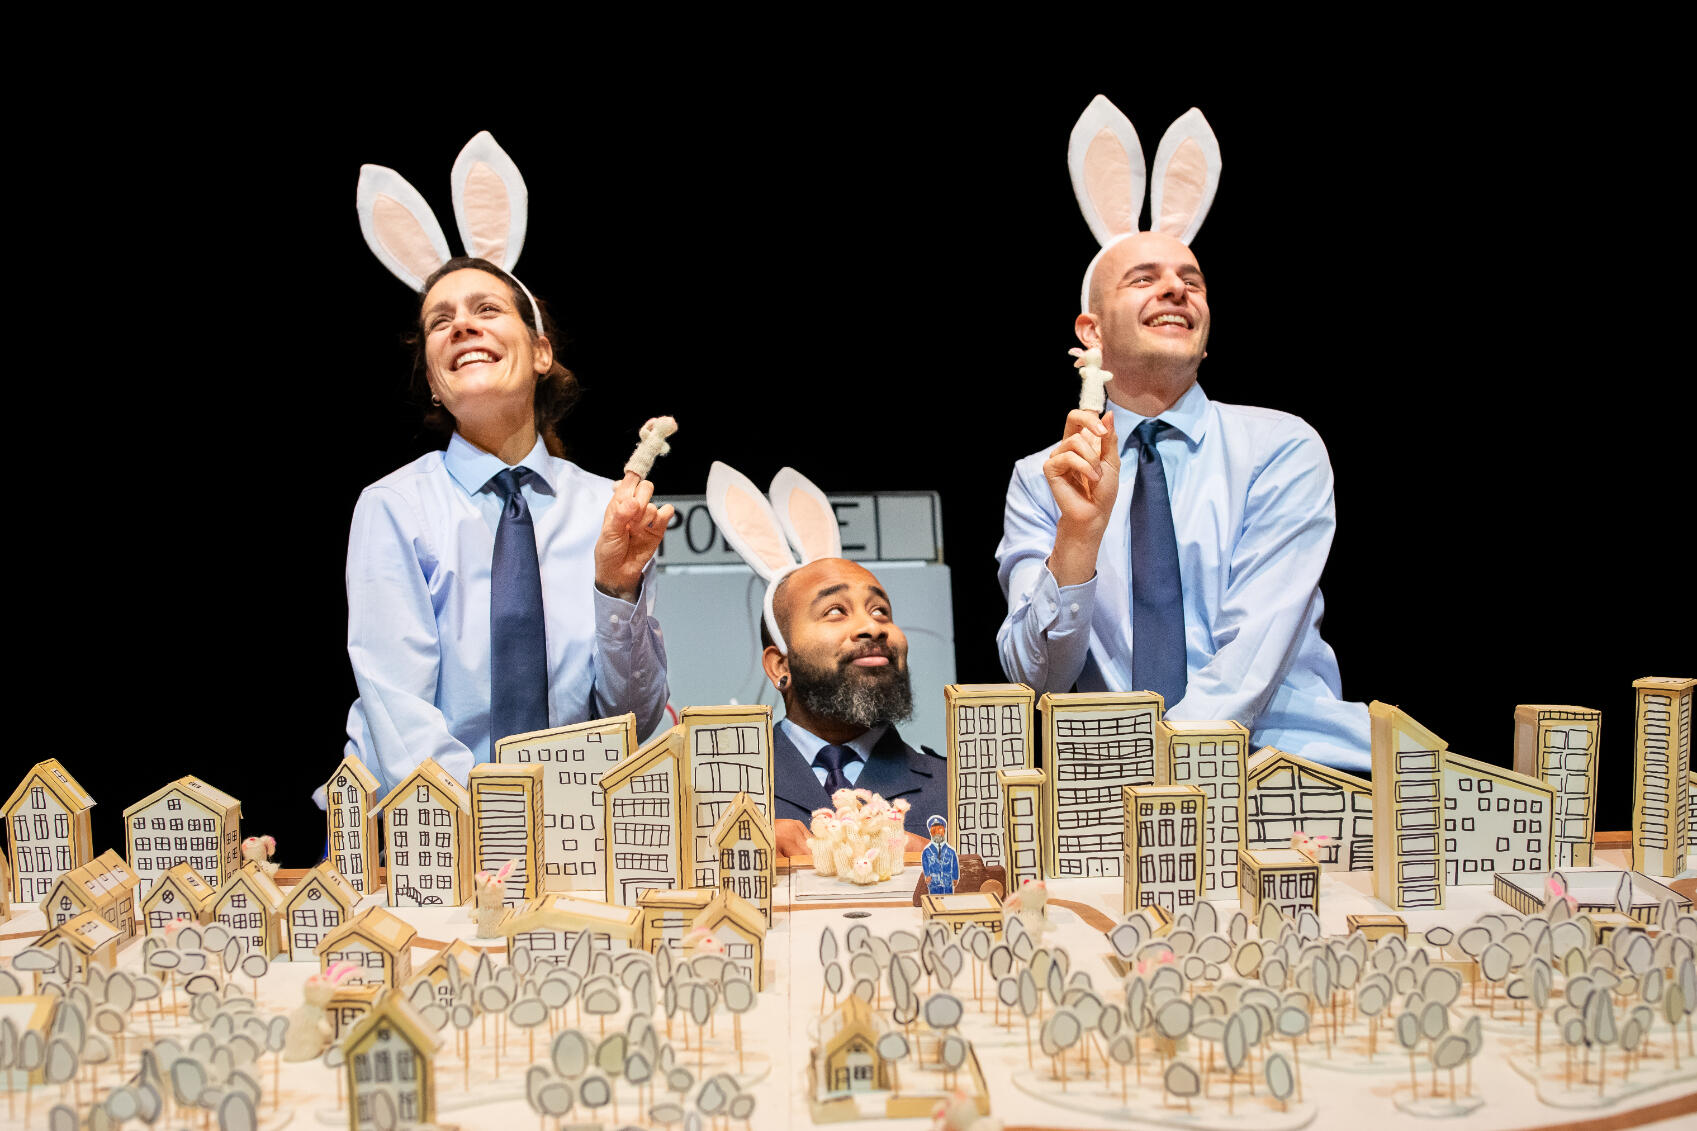 Drie agenten met konijnenoren en konijnen vingerpoppetjes kijken over een plattegrond uit van een stad